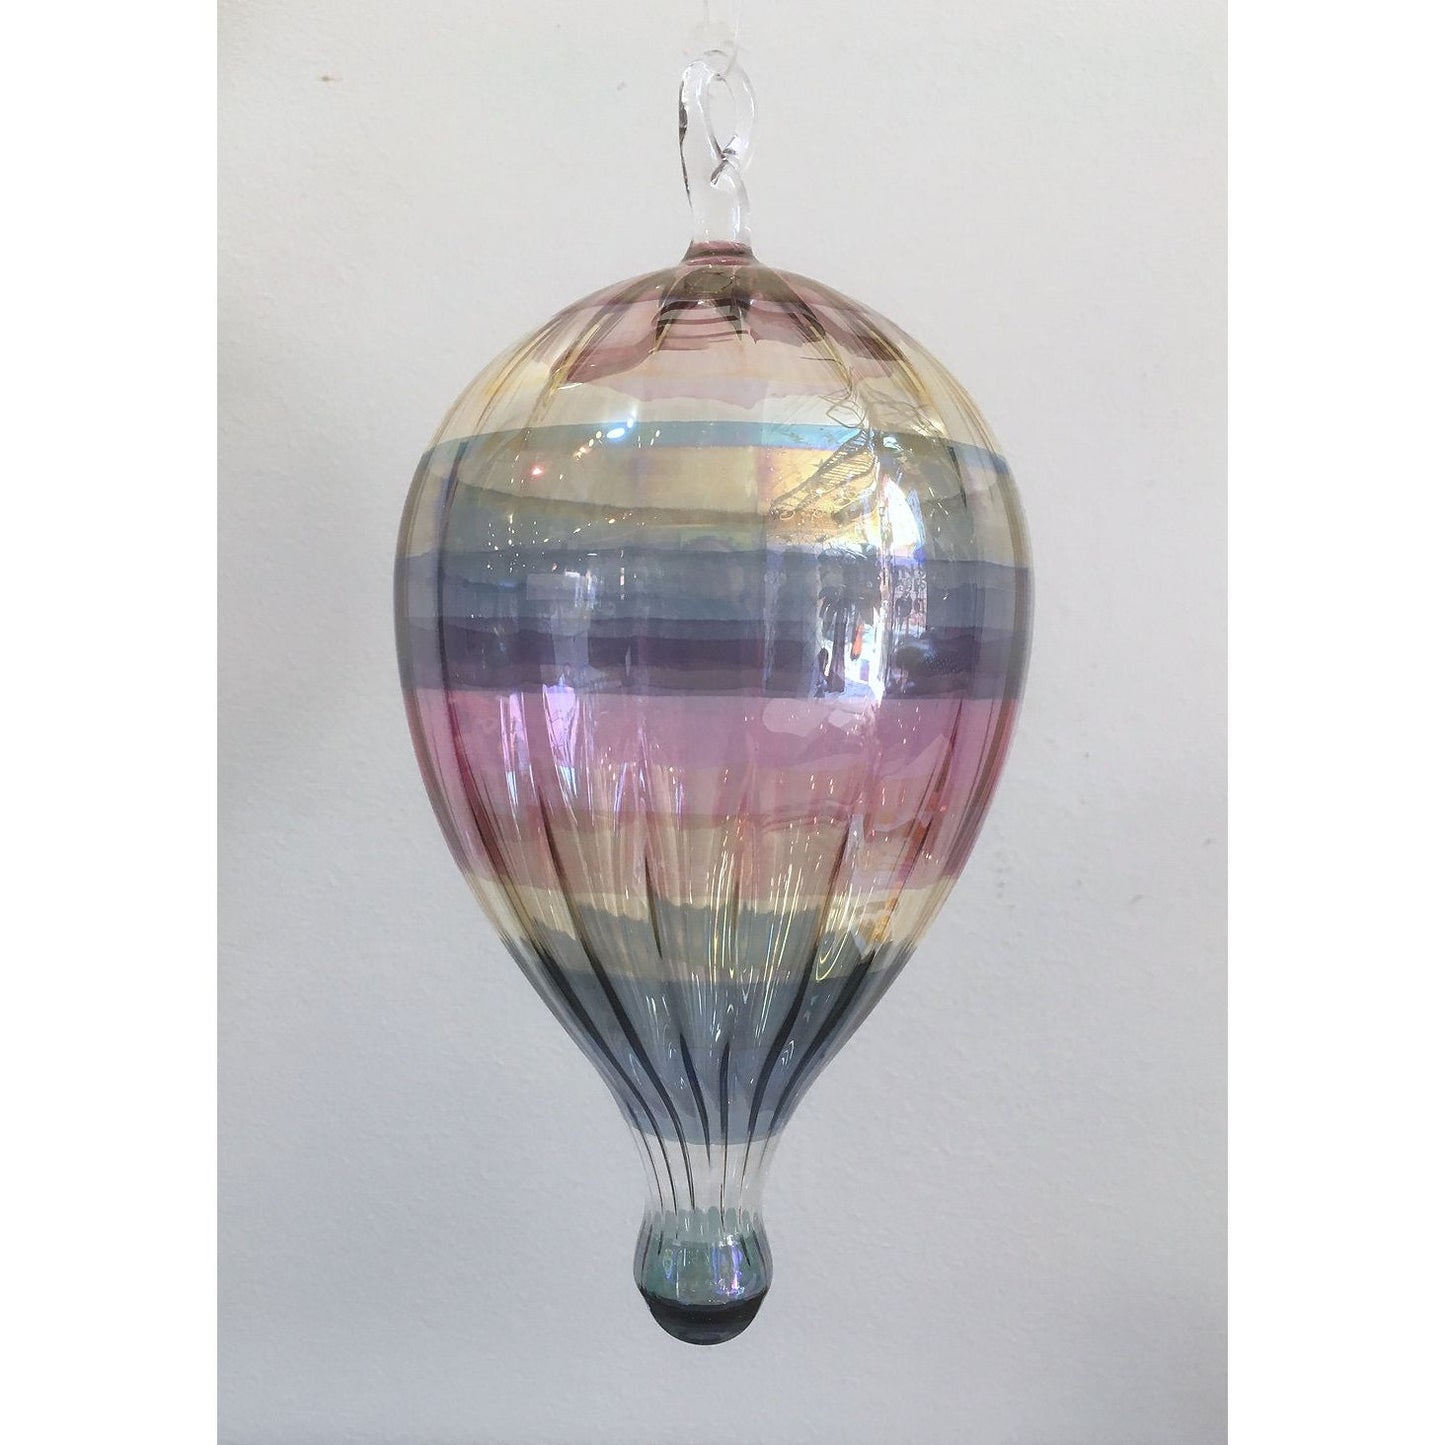 Glass Hanging Hot Air Balloon Suncatcher